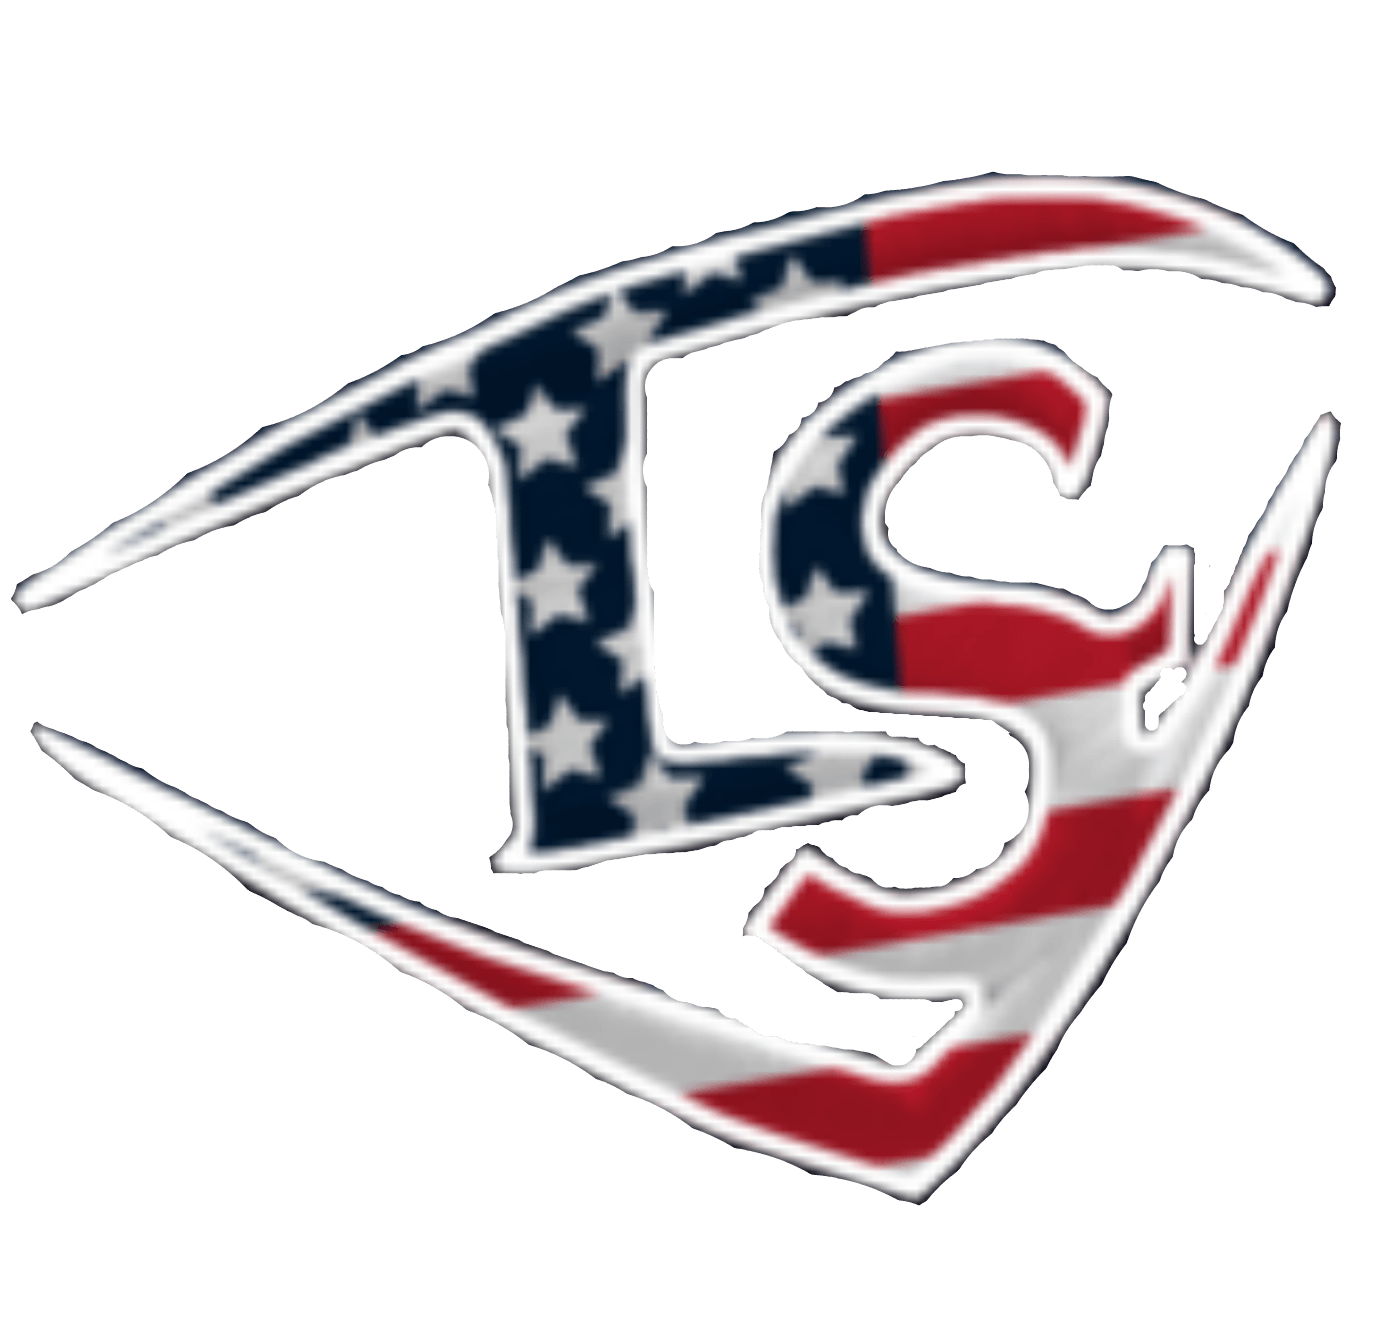 Sluggers Baseball Logo - ALL AMERICAN LOUISVILLE SLUGGER TOP PROSPECT SHOWCASE 2017: Baseball